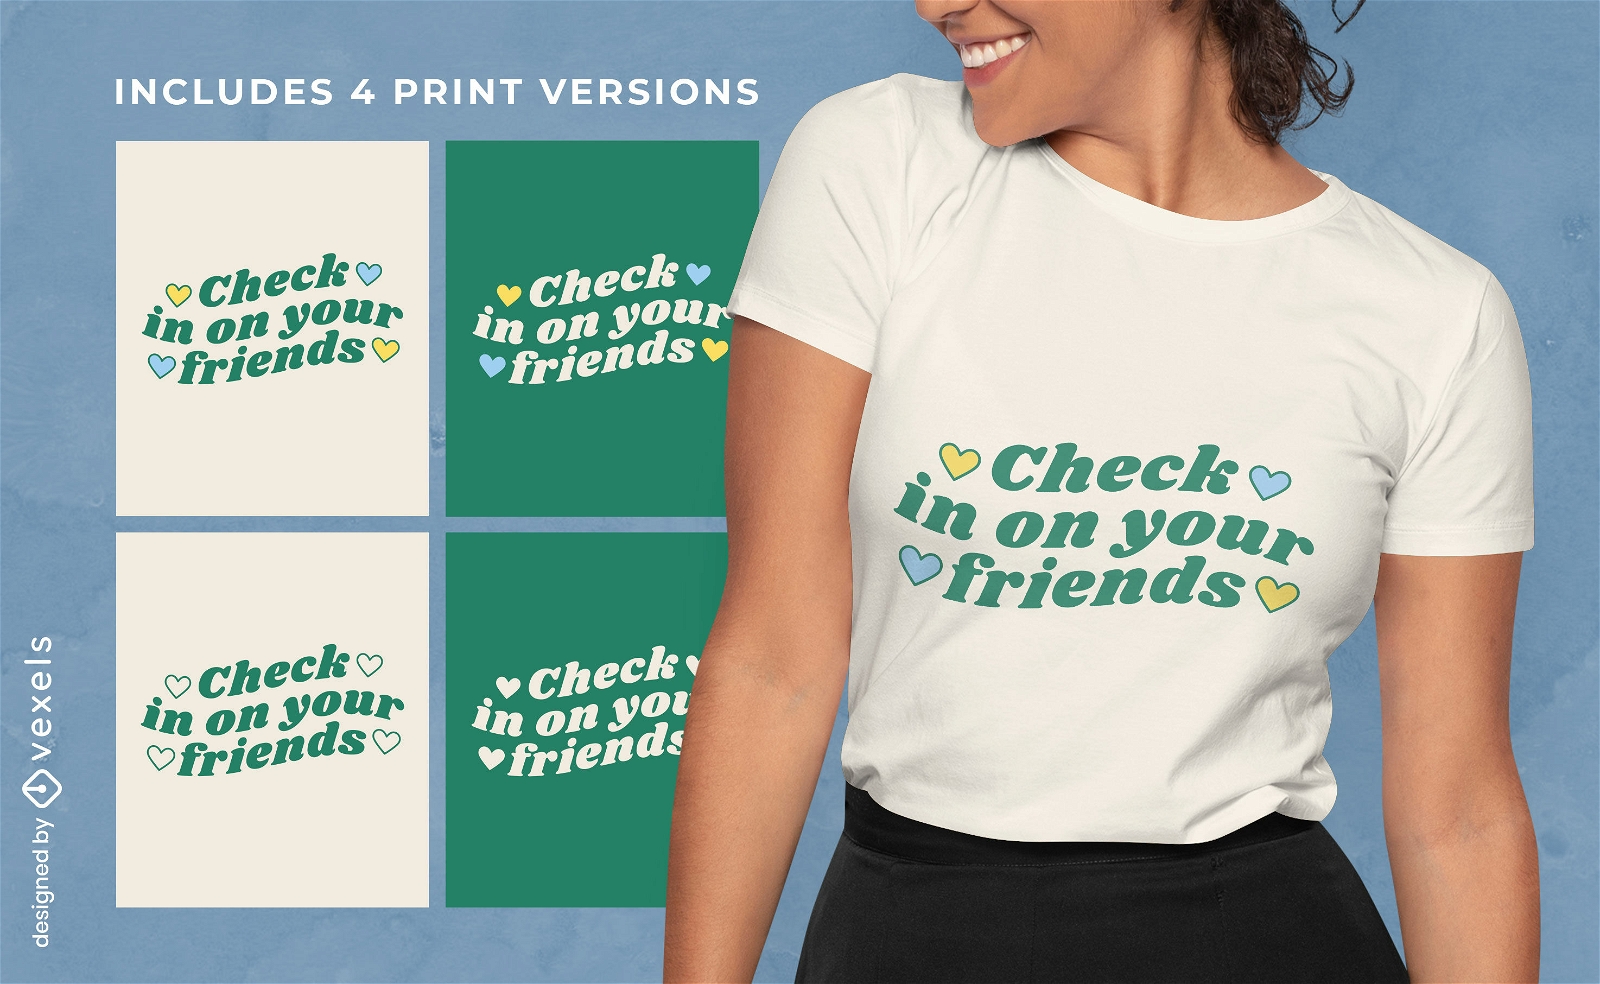 Schauen Sie sich die T-Shirt-Designs Ihrer Freunde in mehreren Versionen an